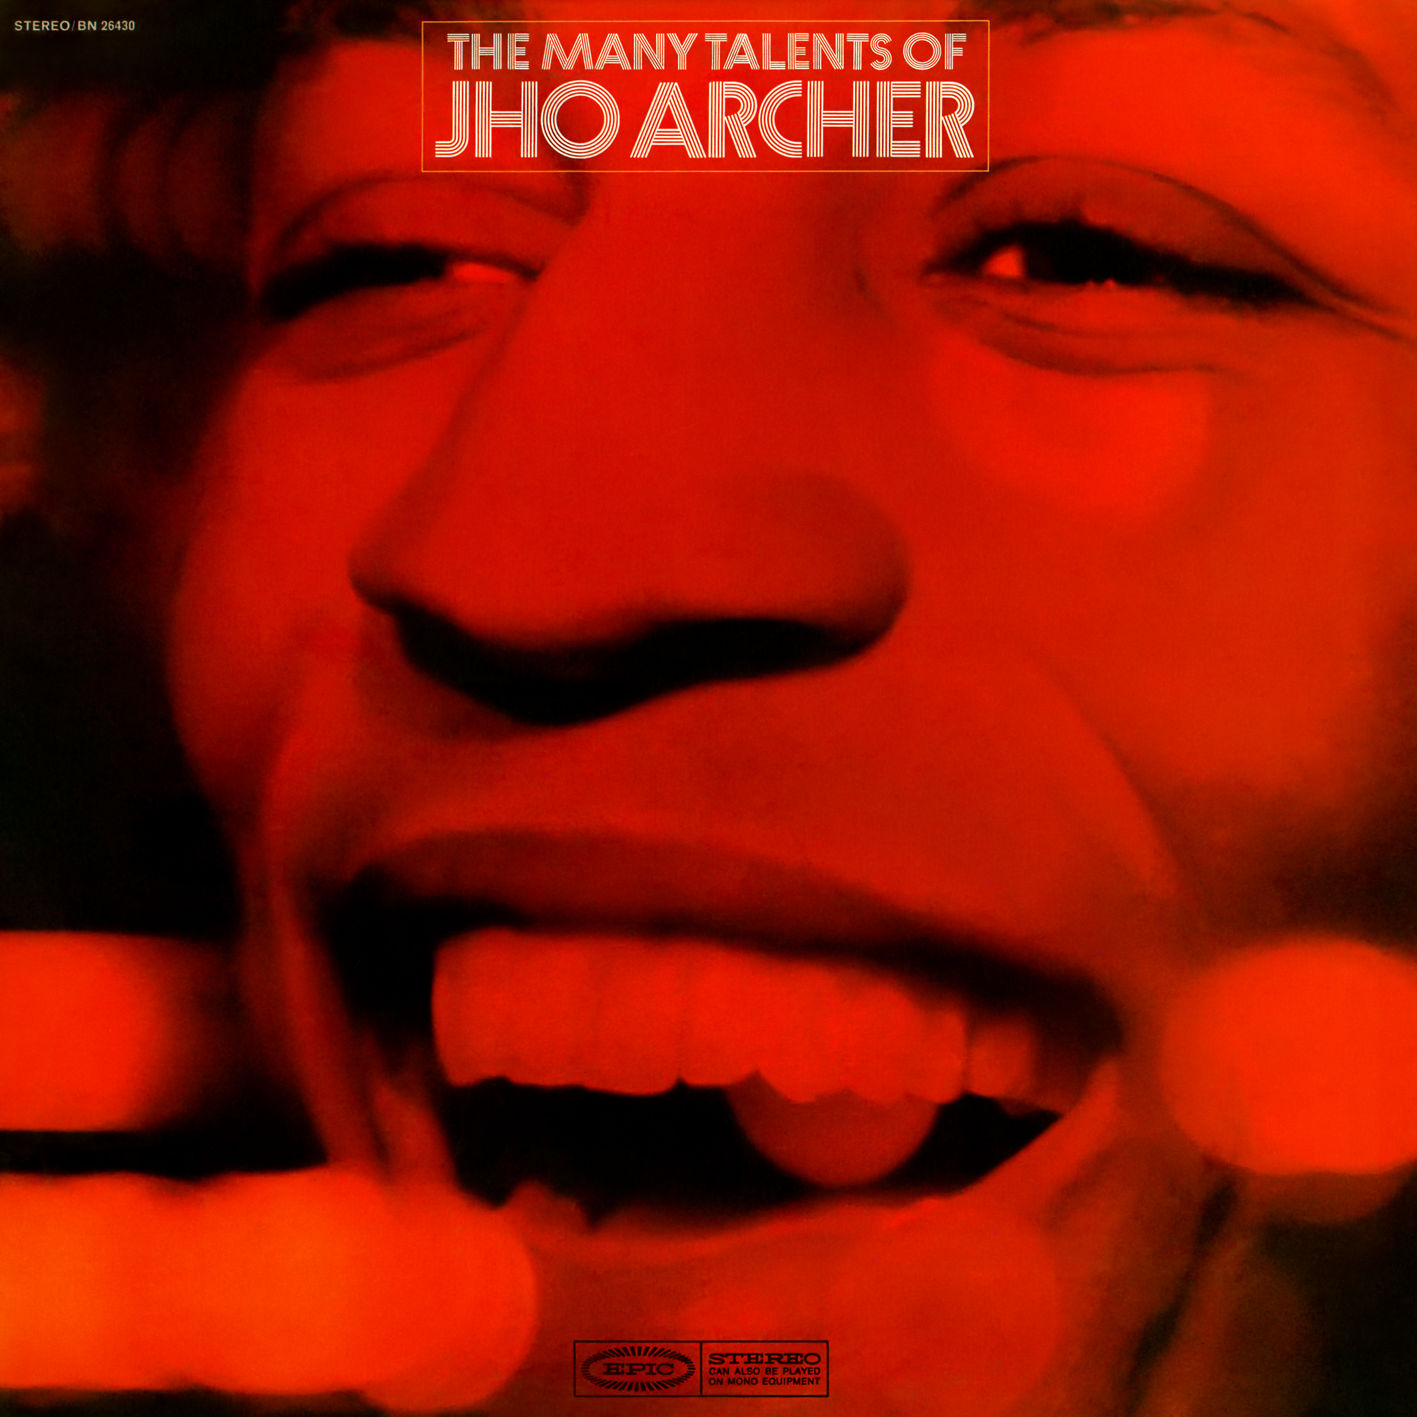 Jho Archer – The Many Talents of Jho Archer (1968/2018) [FLAC 24bit/96kHz]